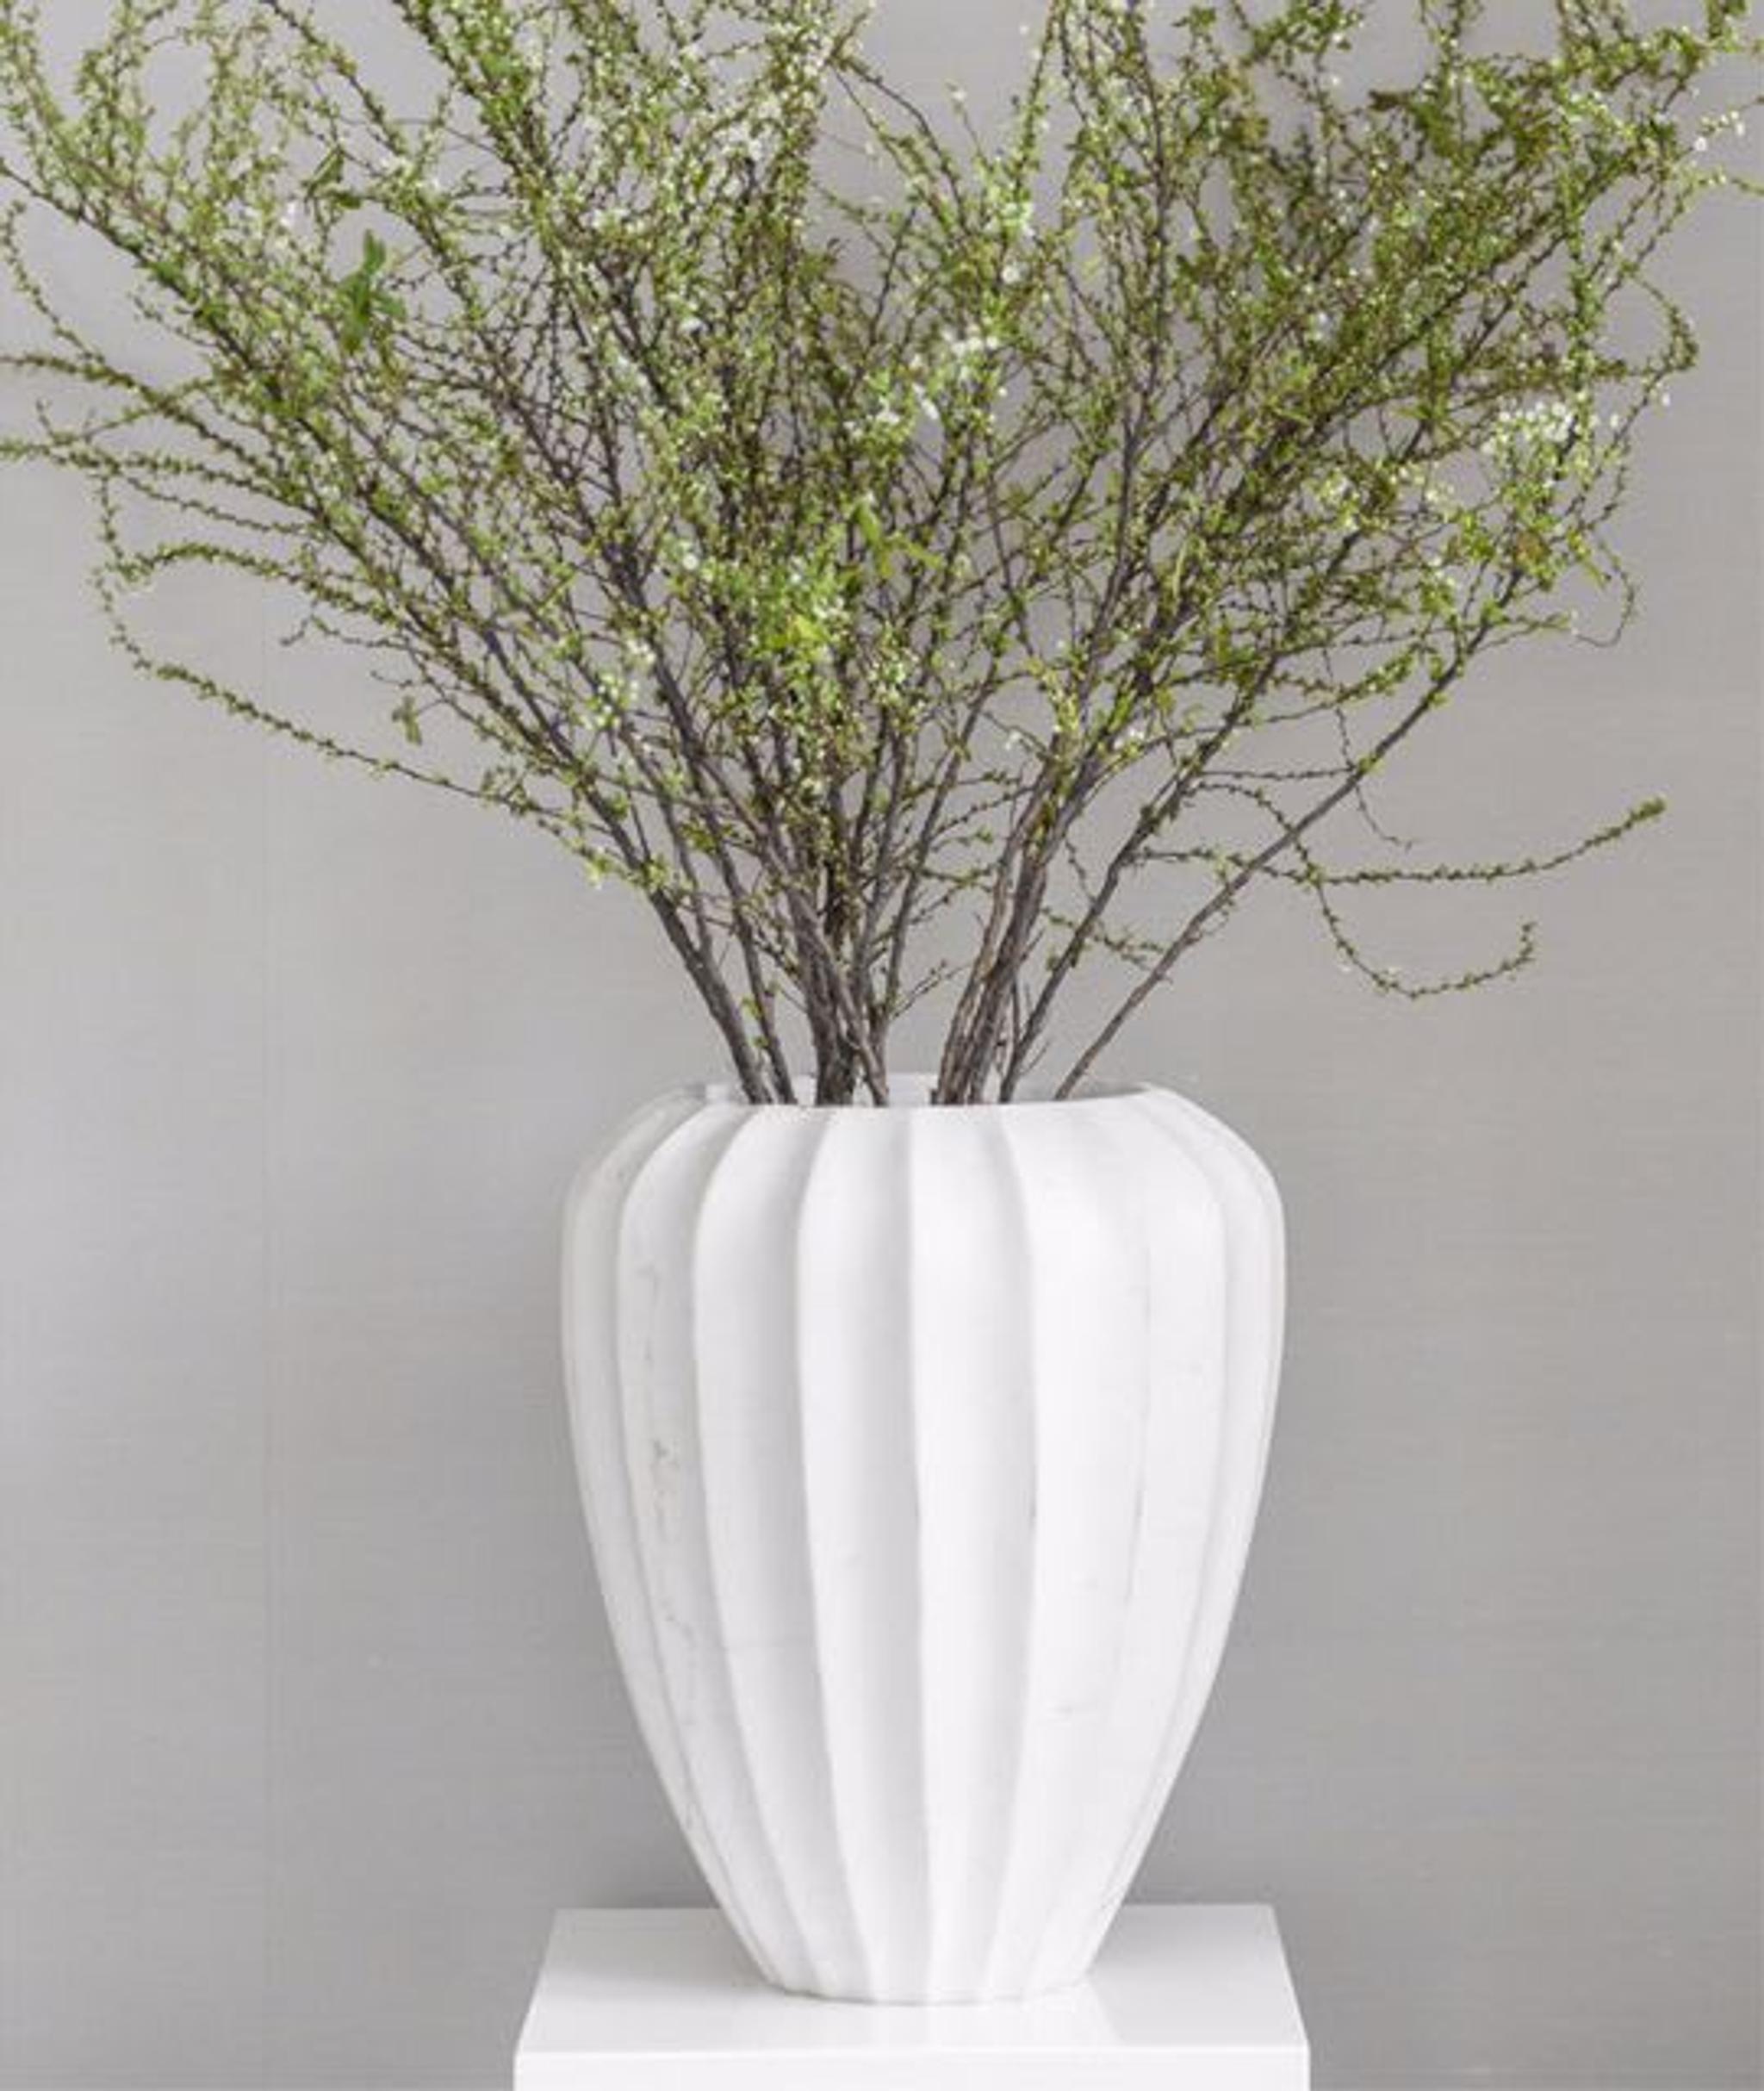 Détails décoratifs raffinés - un vase en céramique avec de longues branches vertes de saison ajoute une touche de vert.